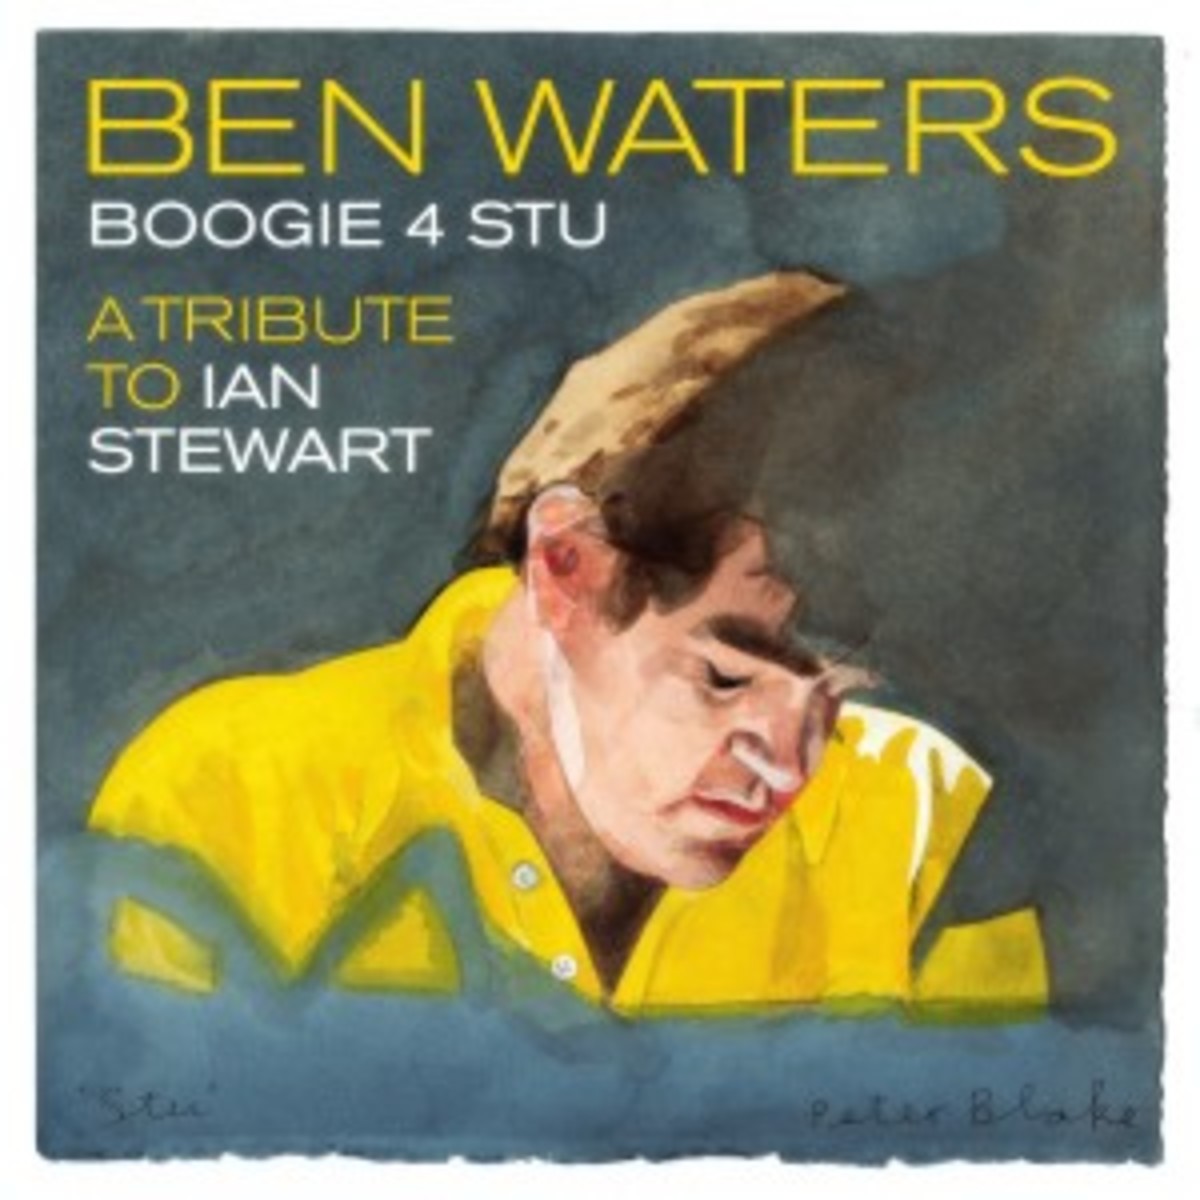 Ben Waters Boogie 4 Stu a Tribute to Ian Stewart